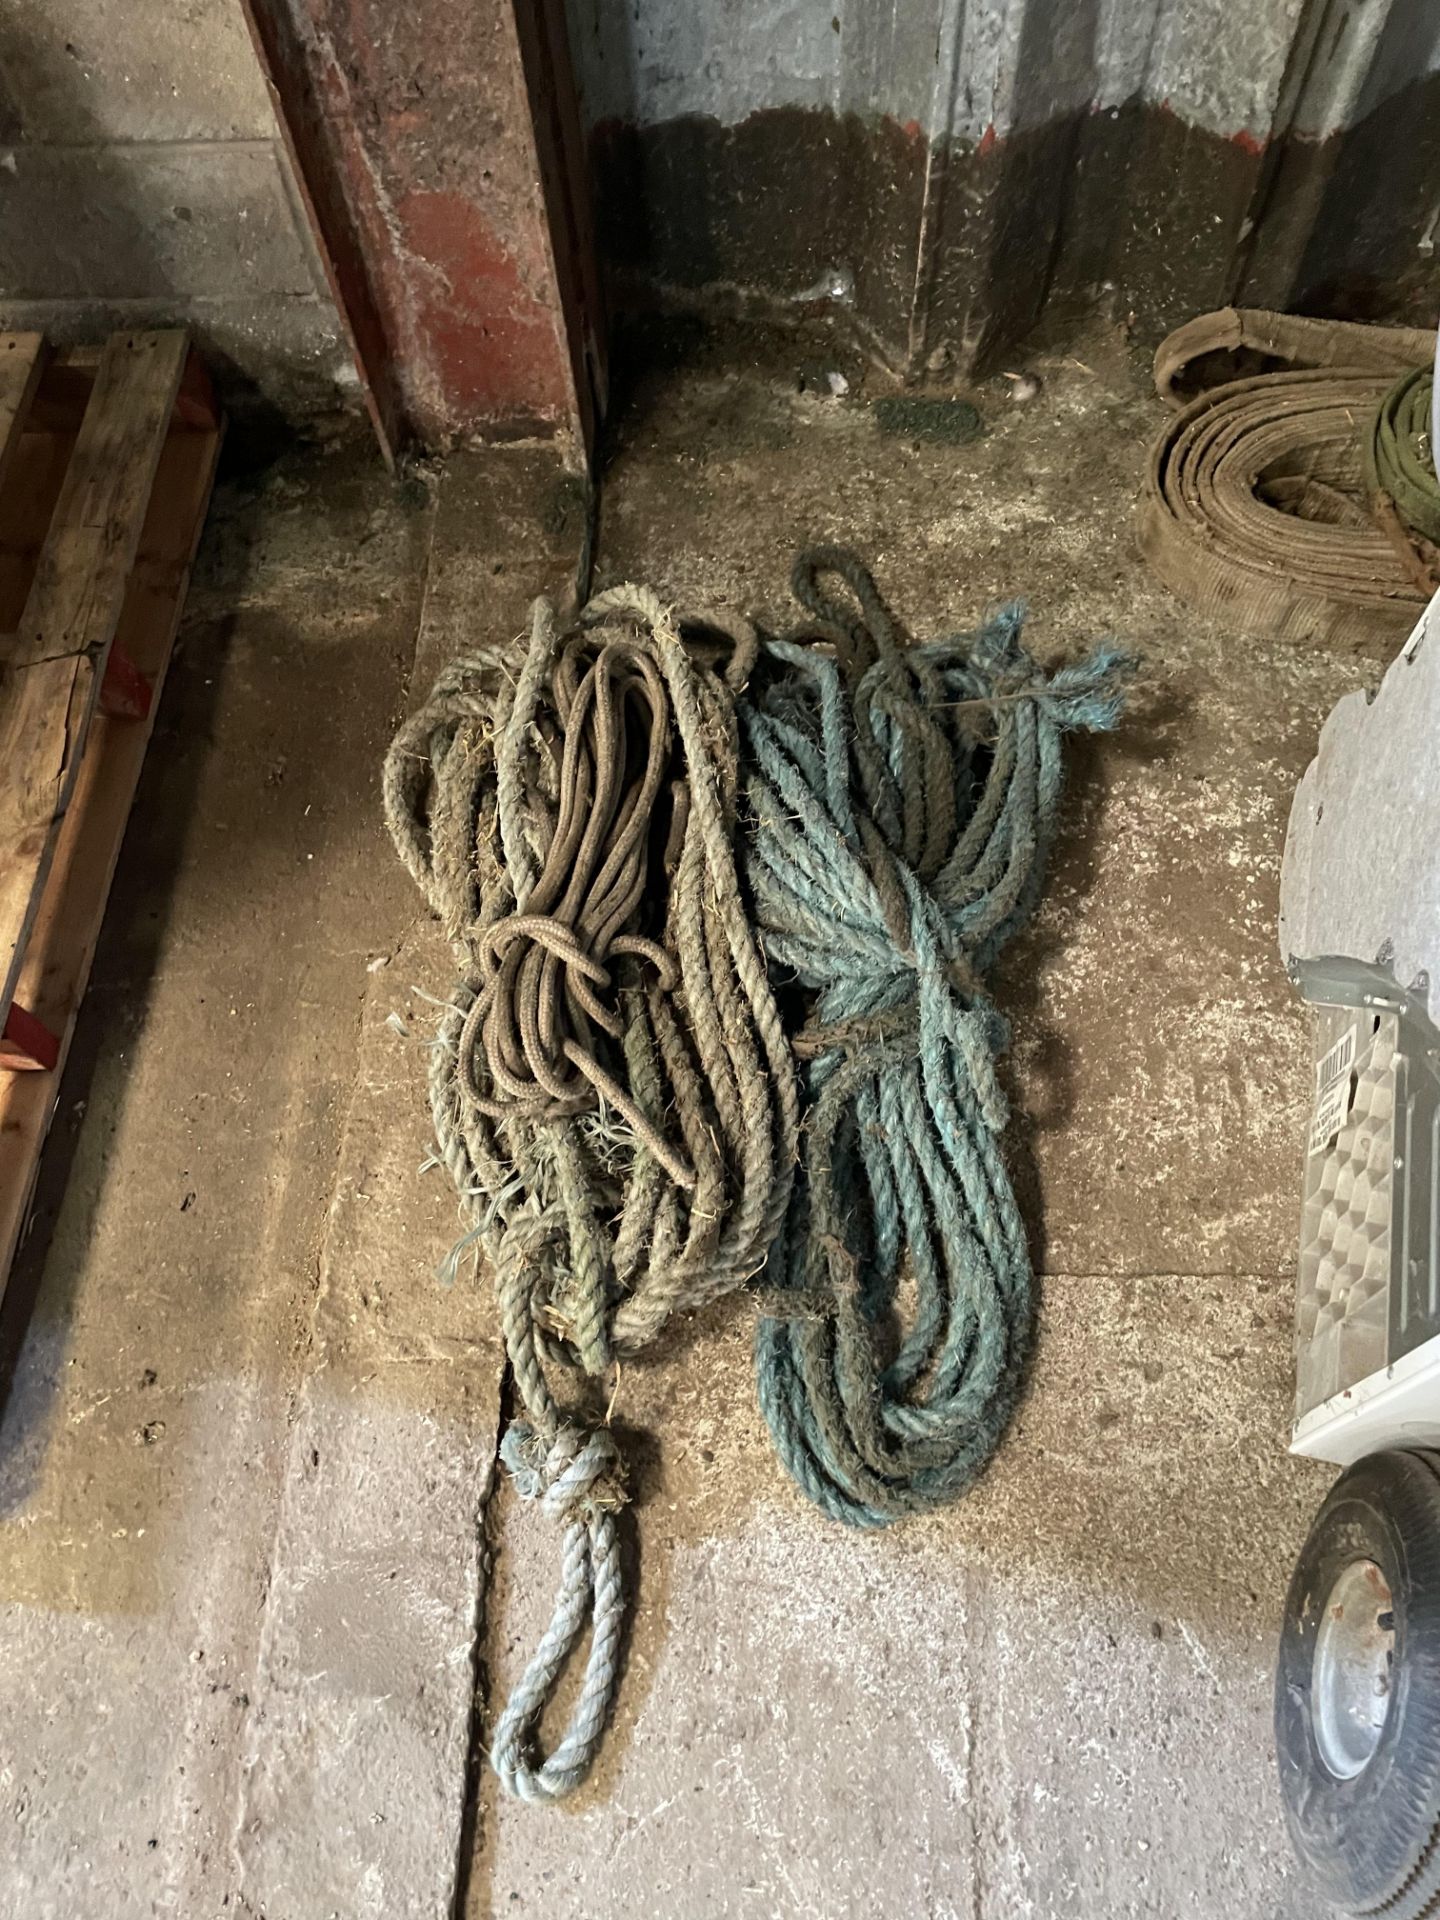 Quantity of Rope